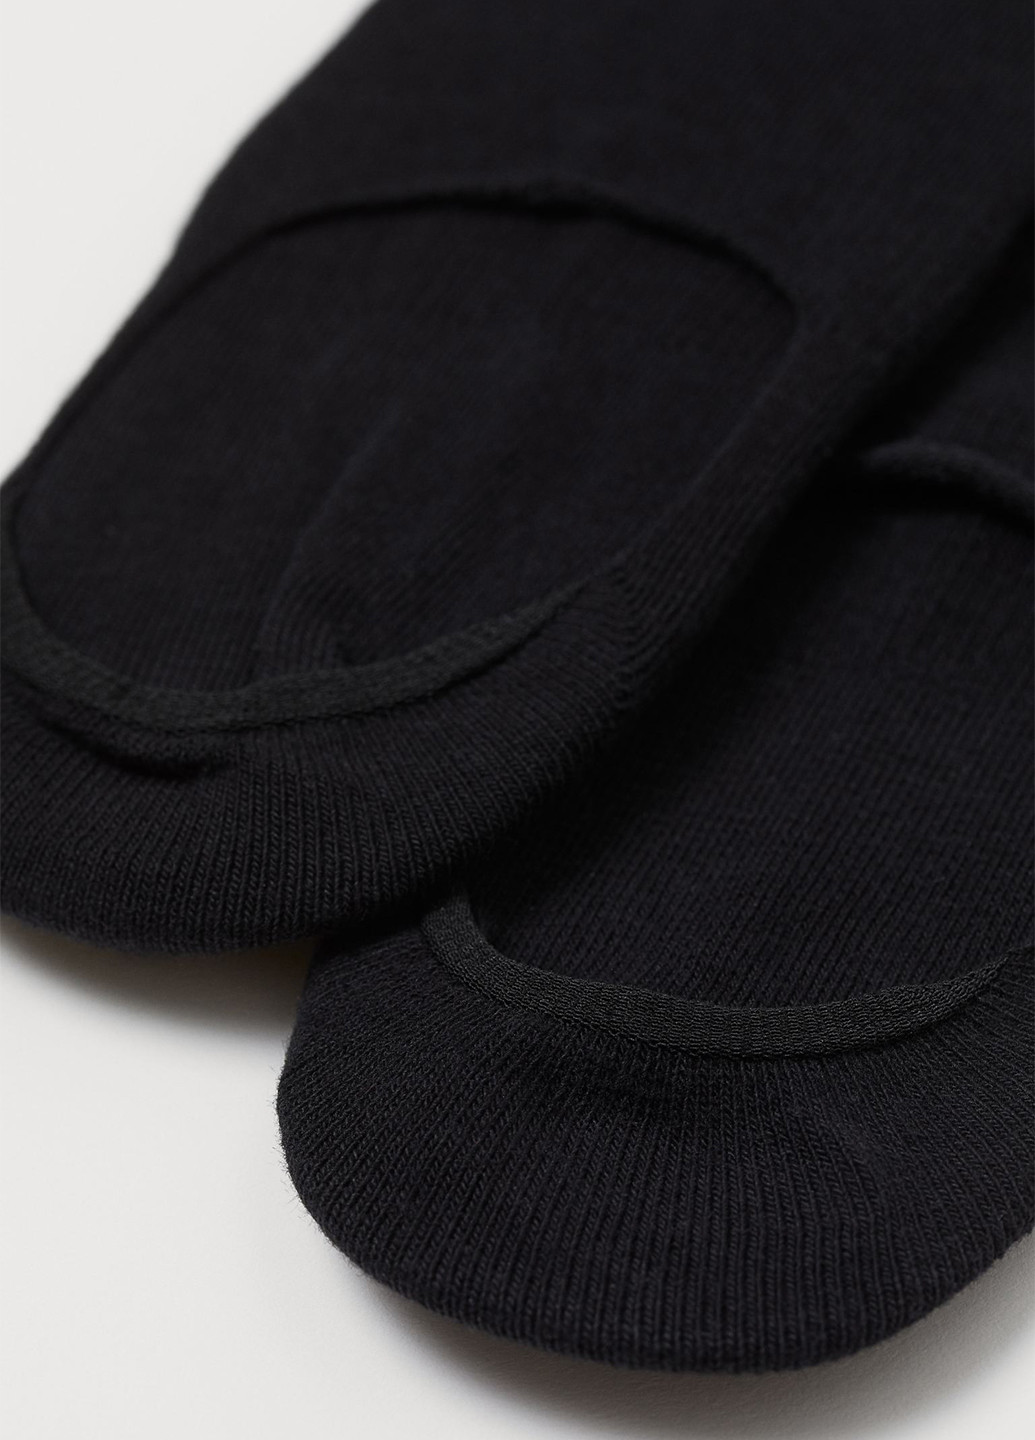 Подследники (5 шт.) H&M без уплотненного носка однотонные чёрные повседневные